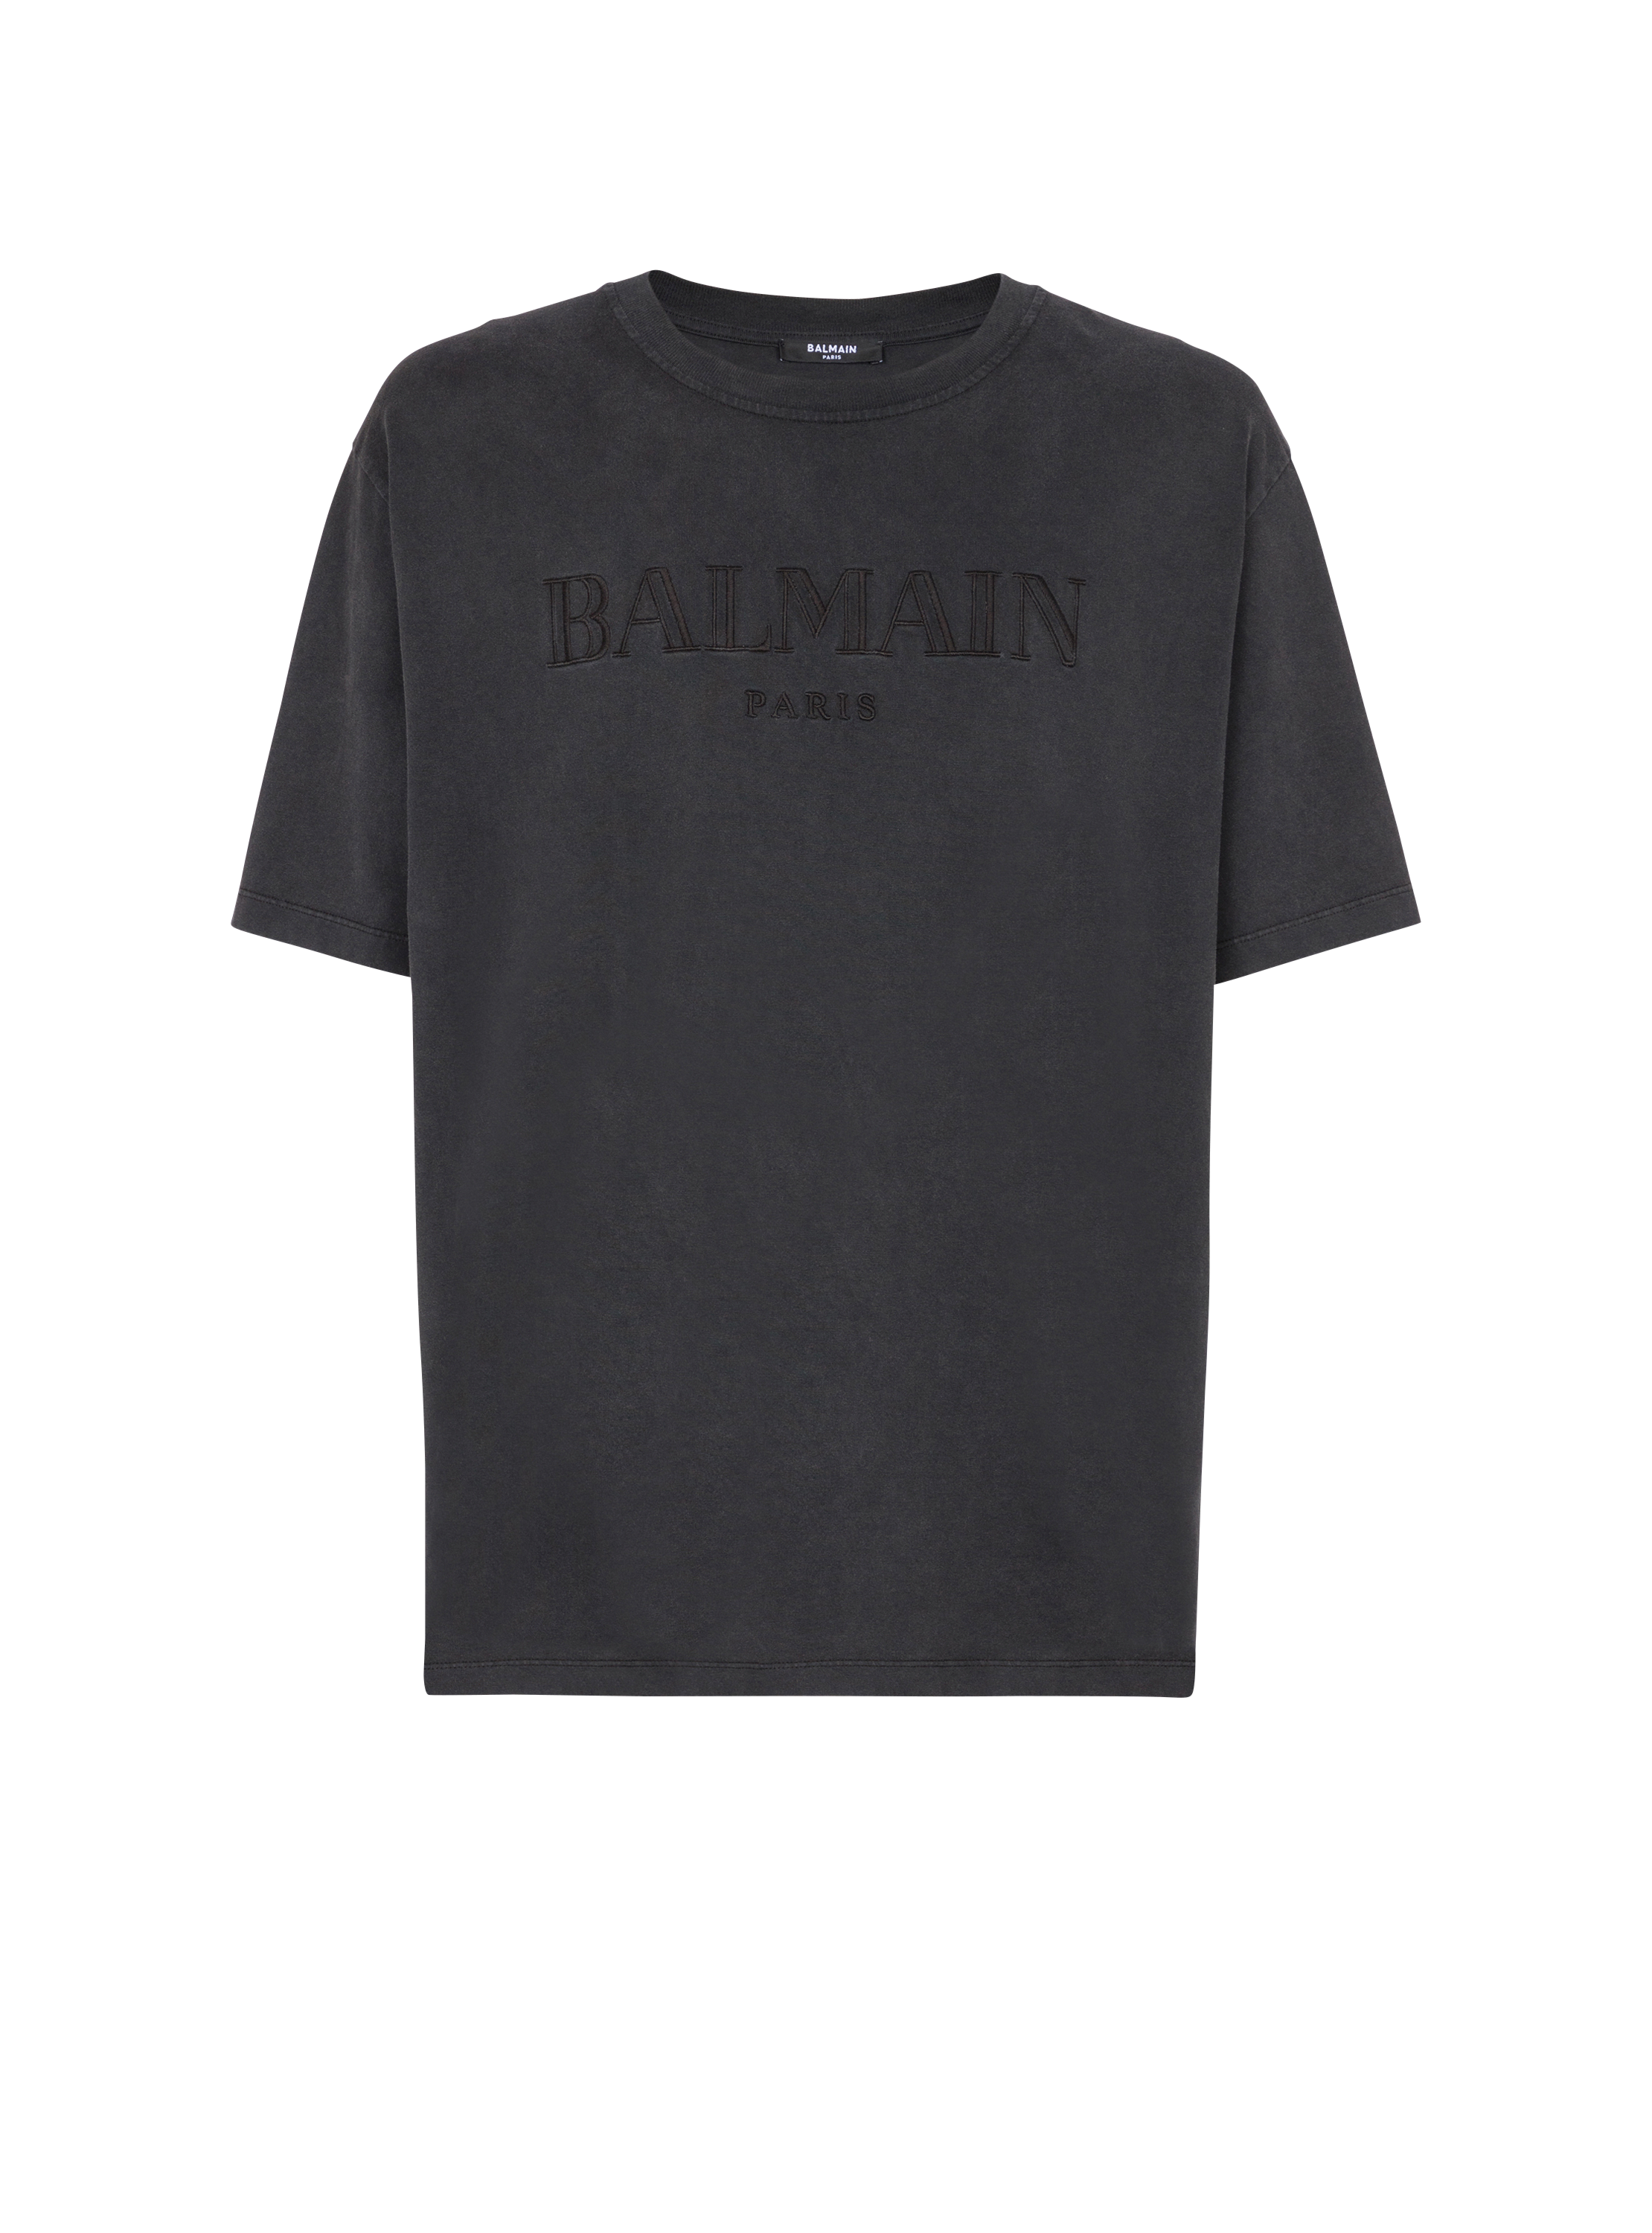 Besticktes Balmain Vintage T-Shirt